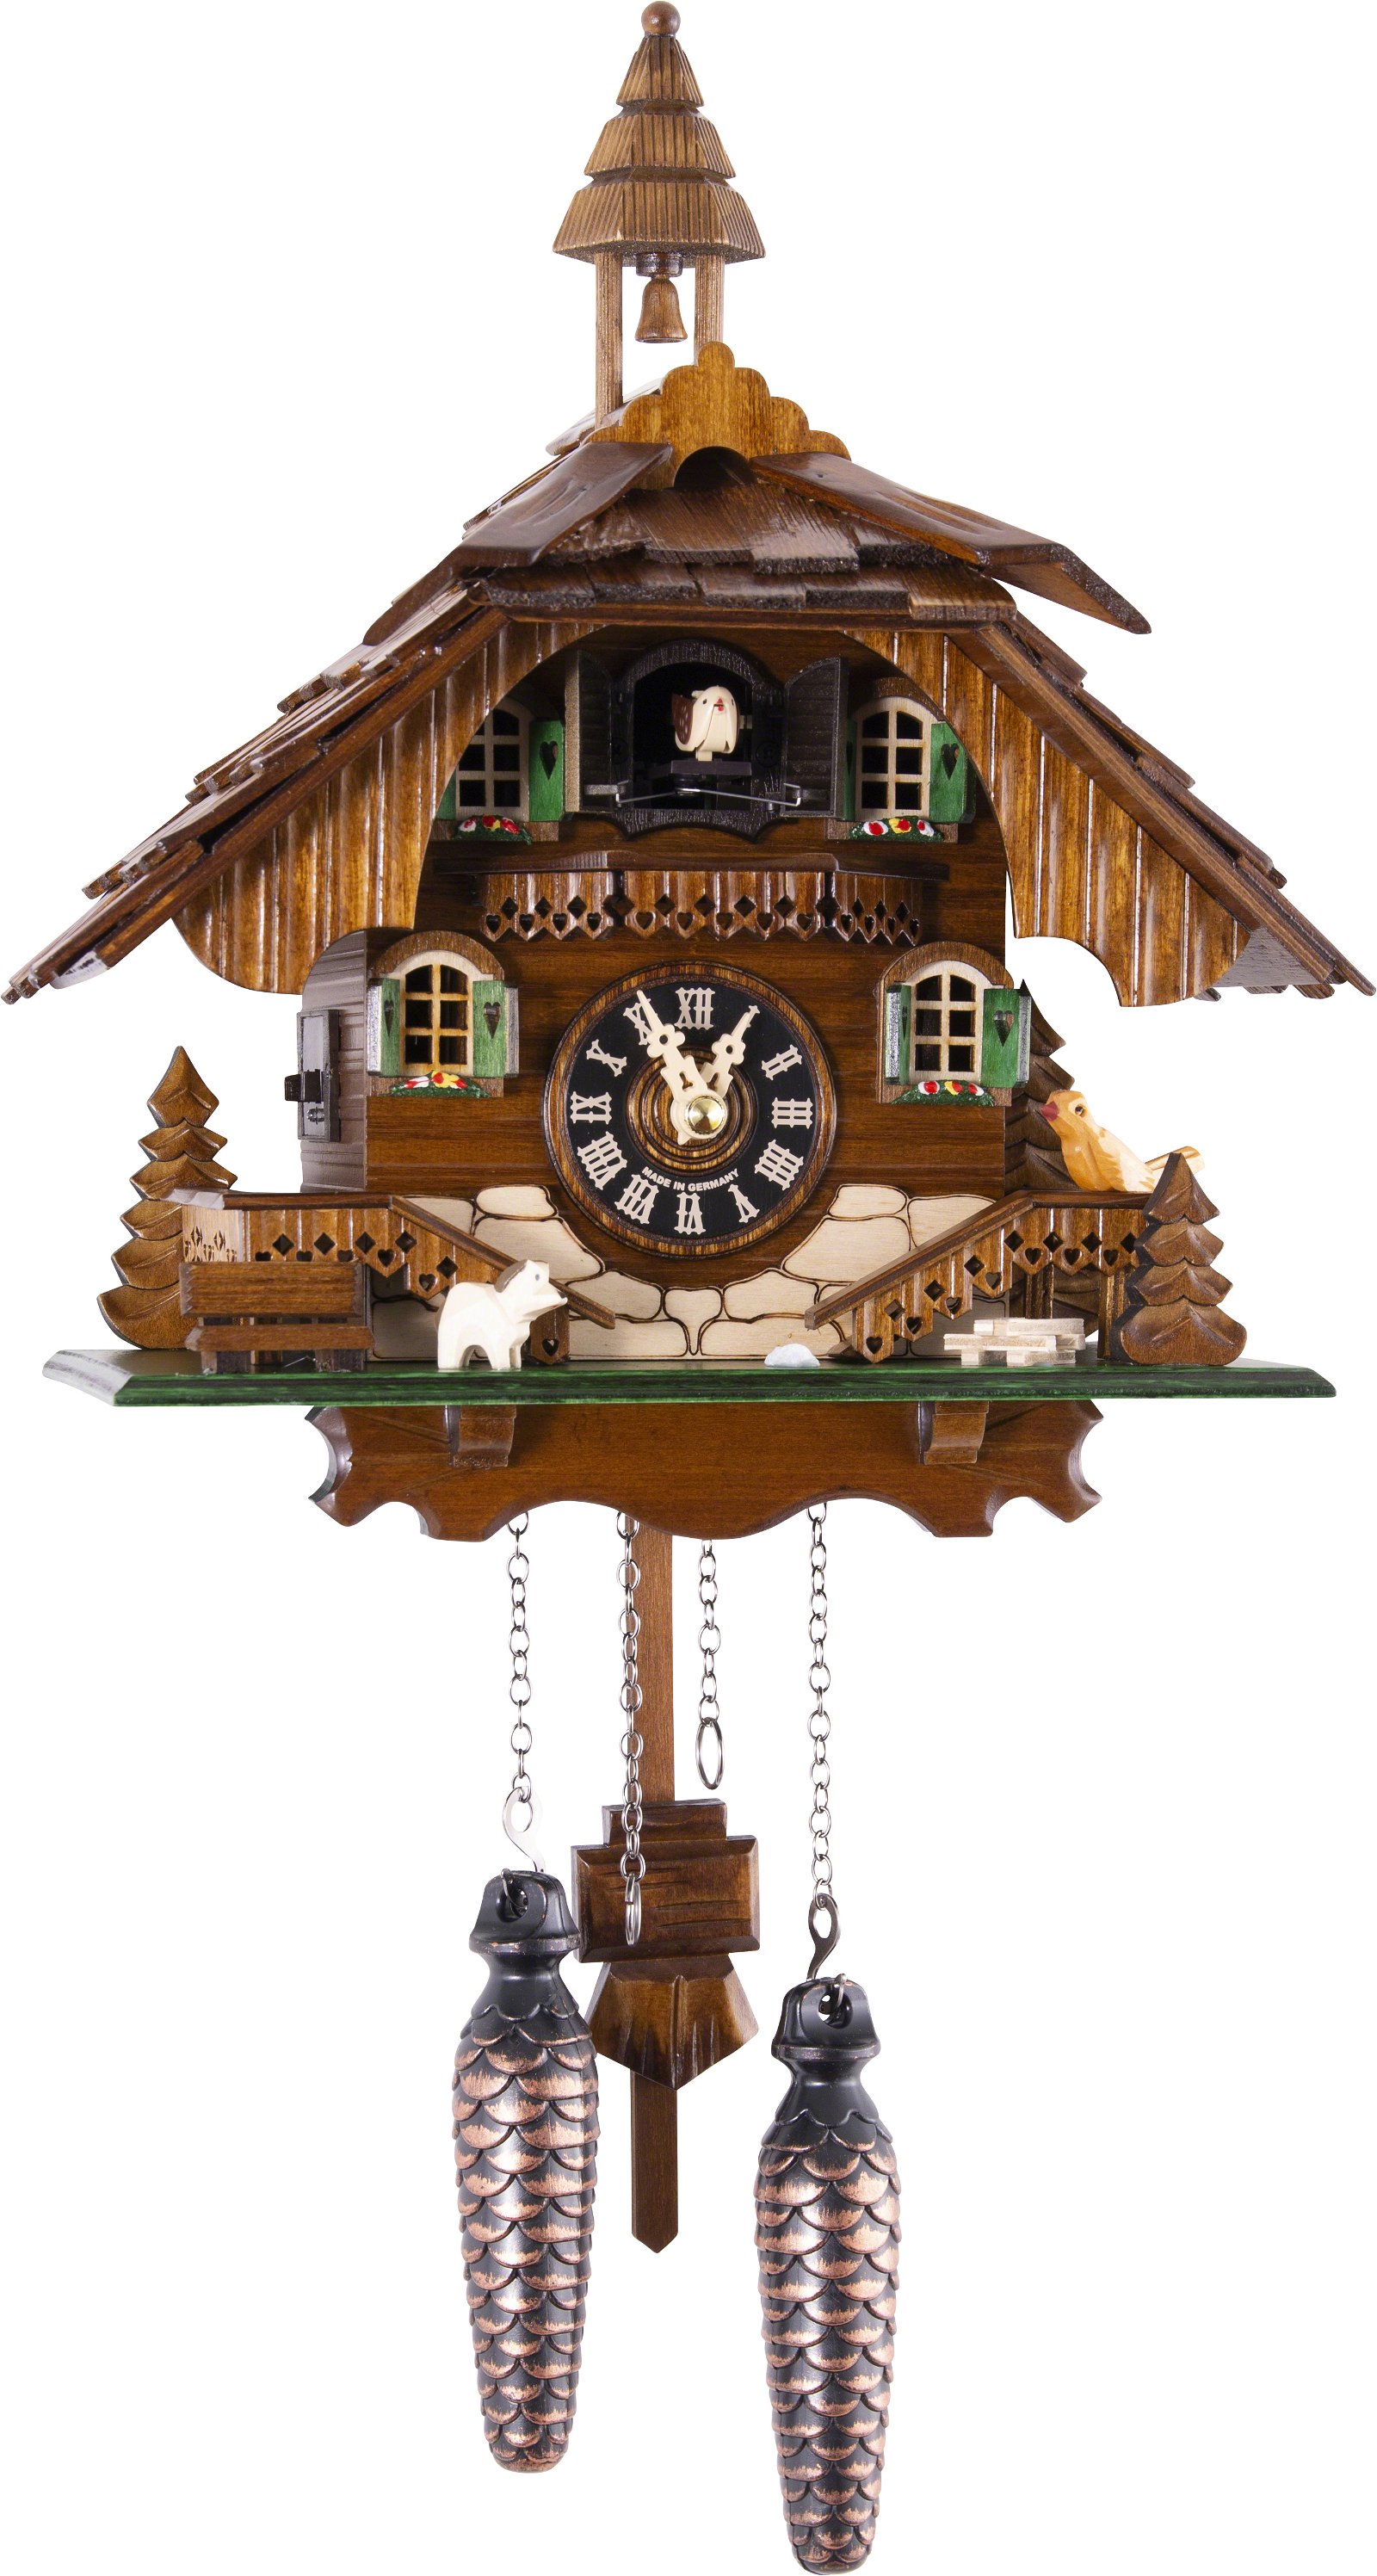 Kuckucksuhr Quarz-Uhrwerk Chalet-Stil 31cm von Engstler